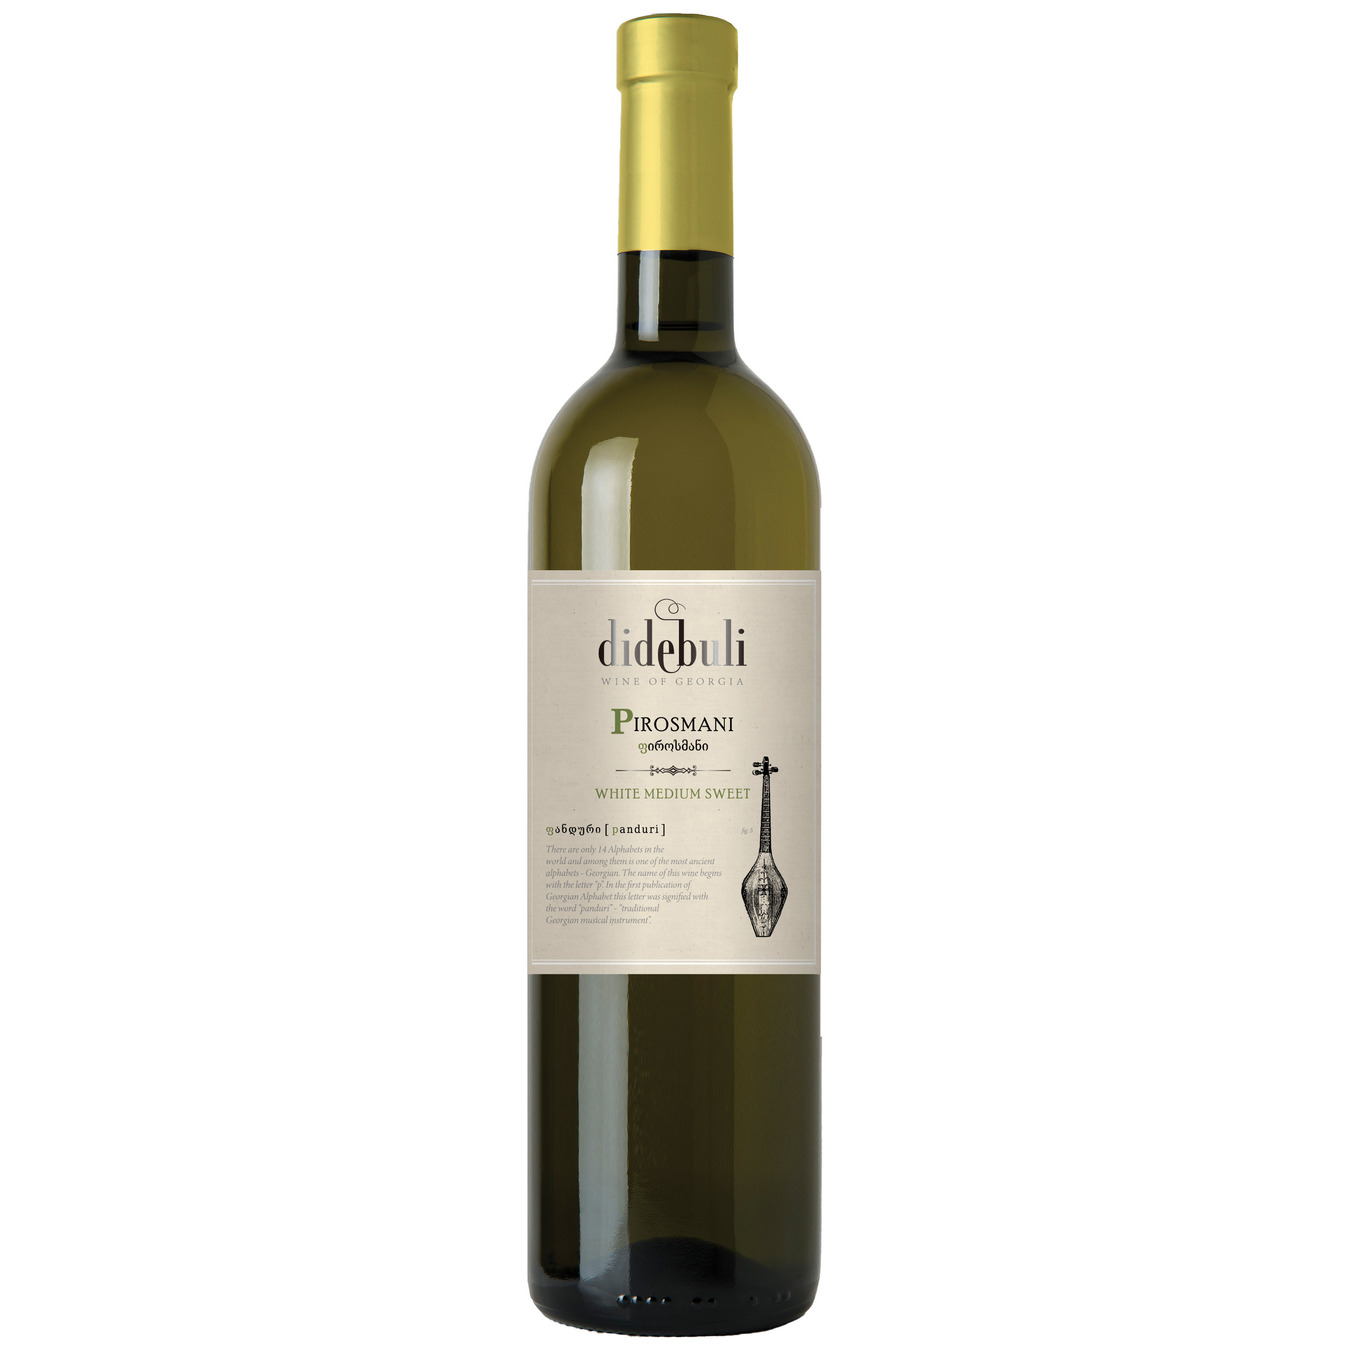 Вино Didebuli Pirosmani біле напівсолодке 11% 0,75л